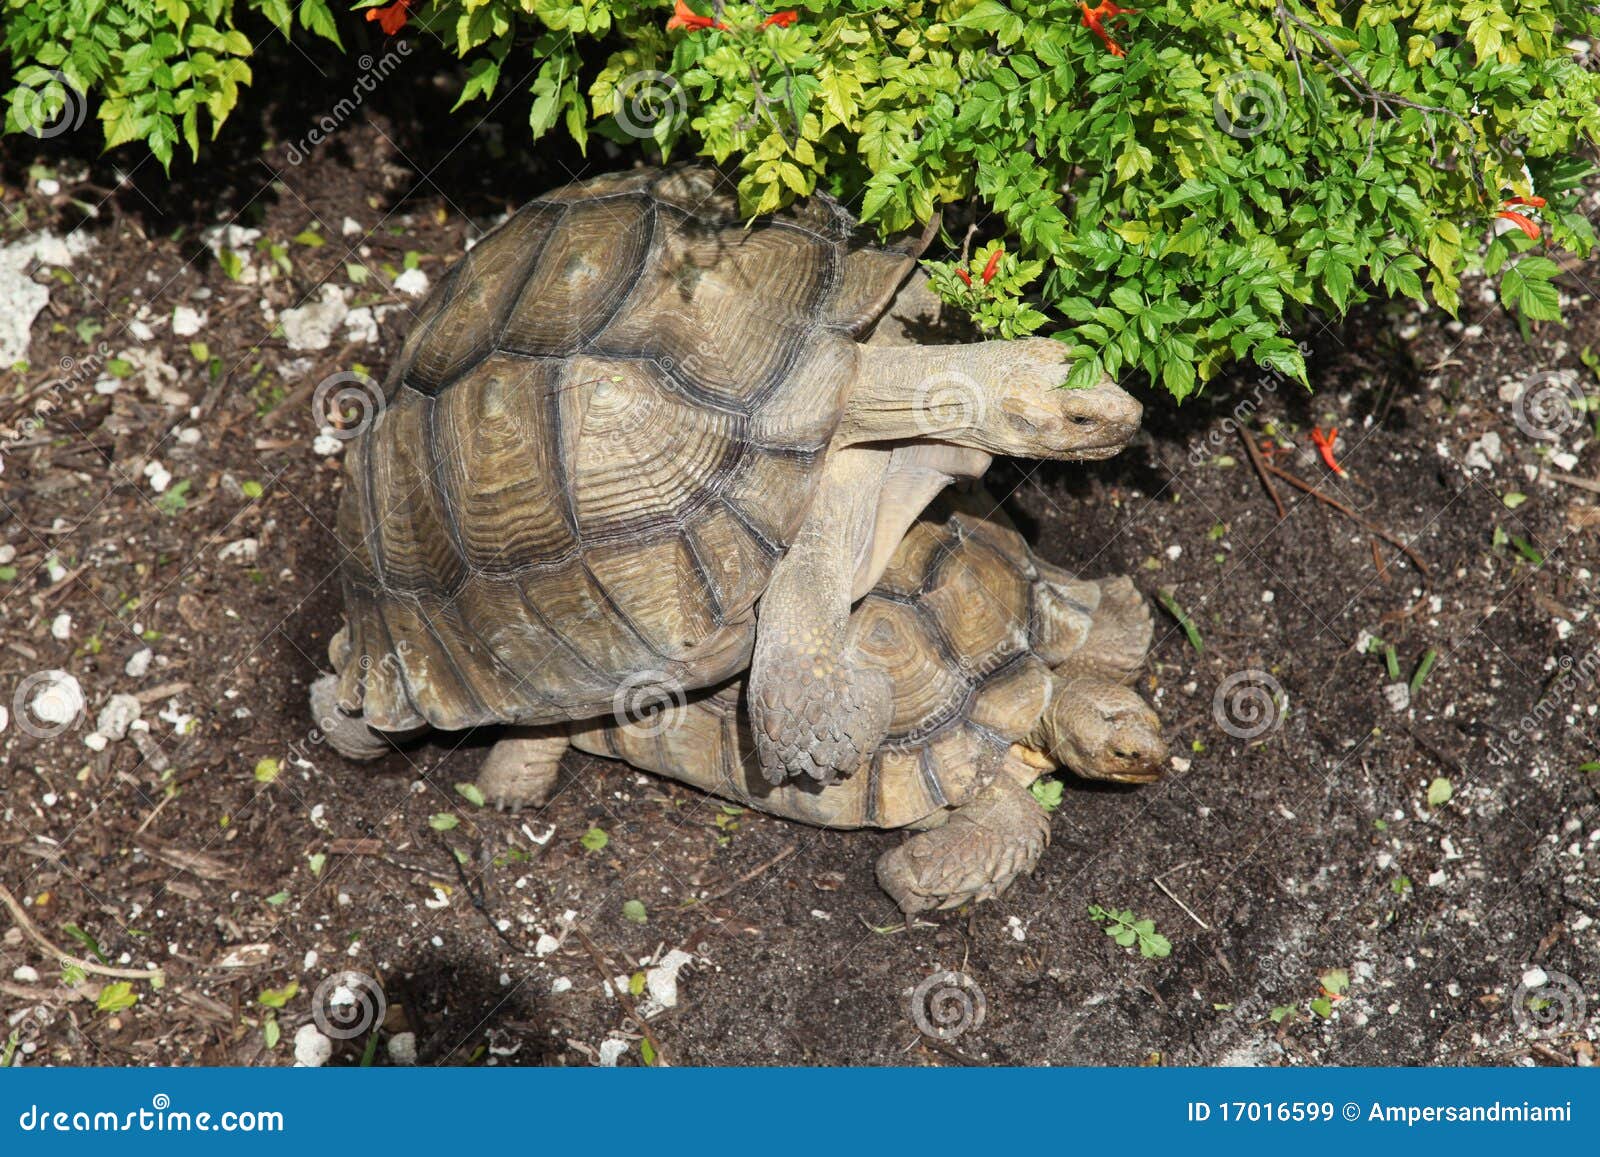 Tortoise che copulating. Due tartarughe che allevano, quella copulating o avendo sesso.